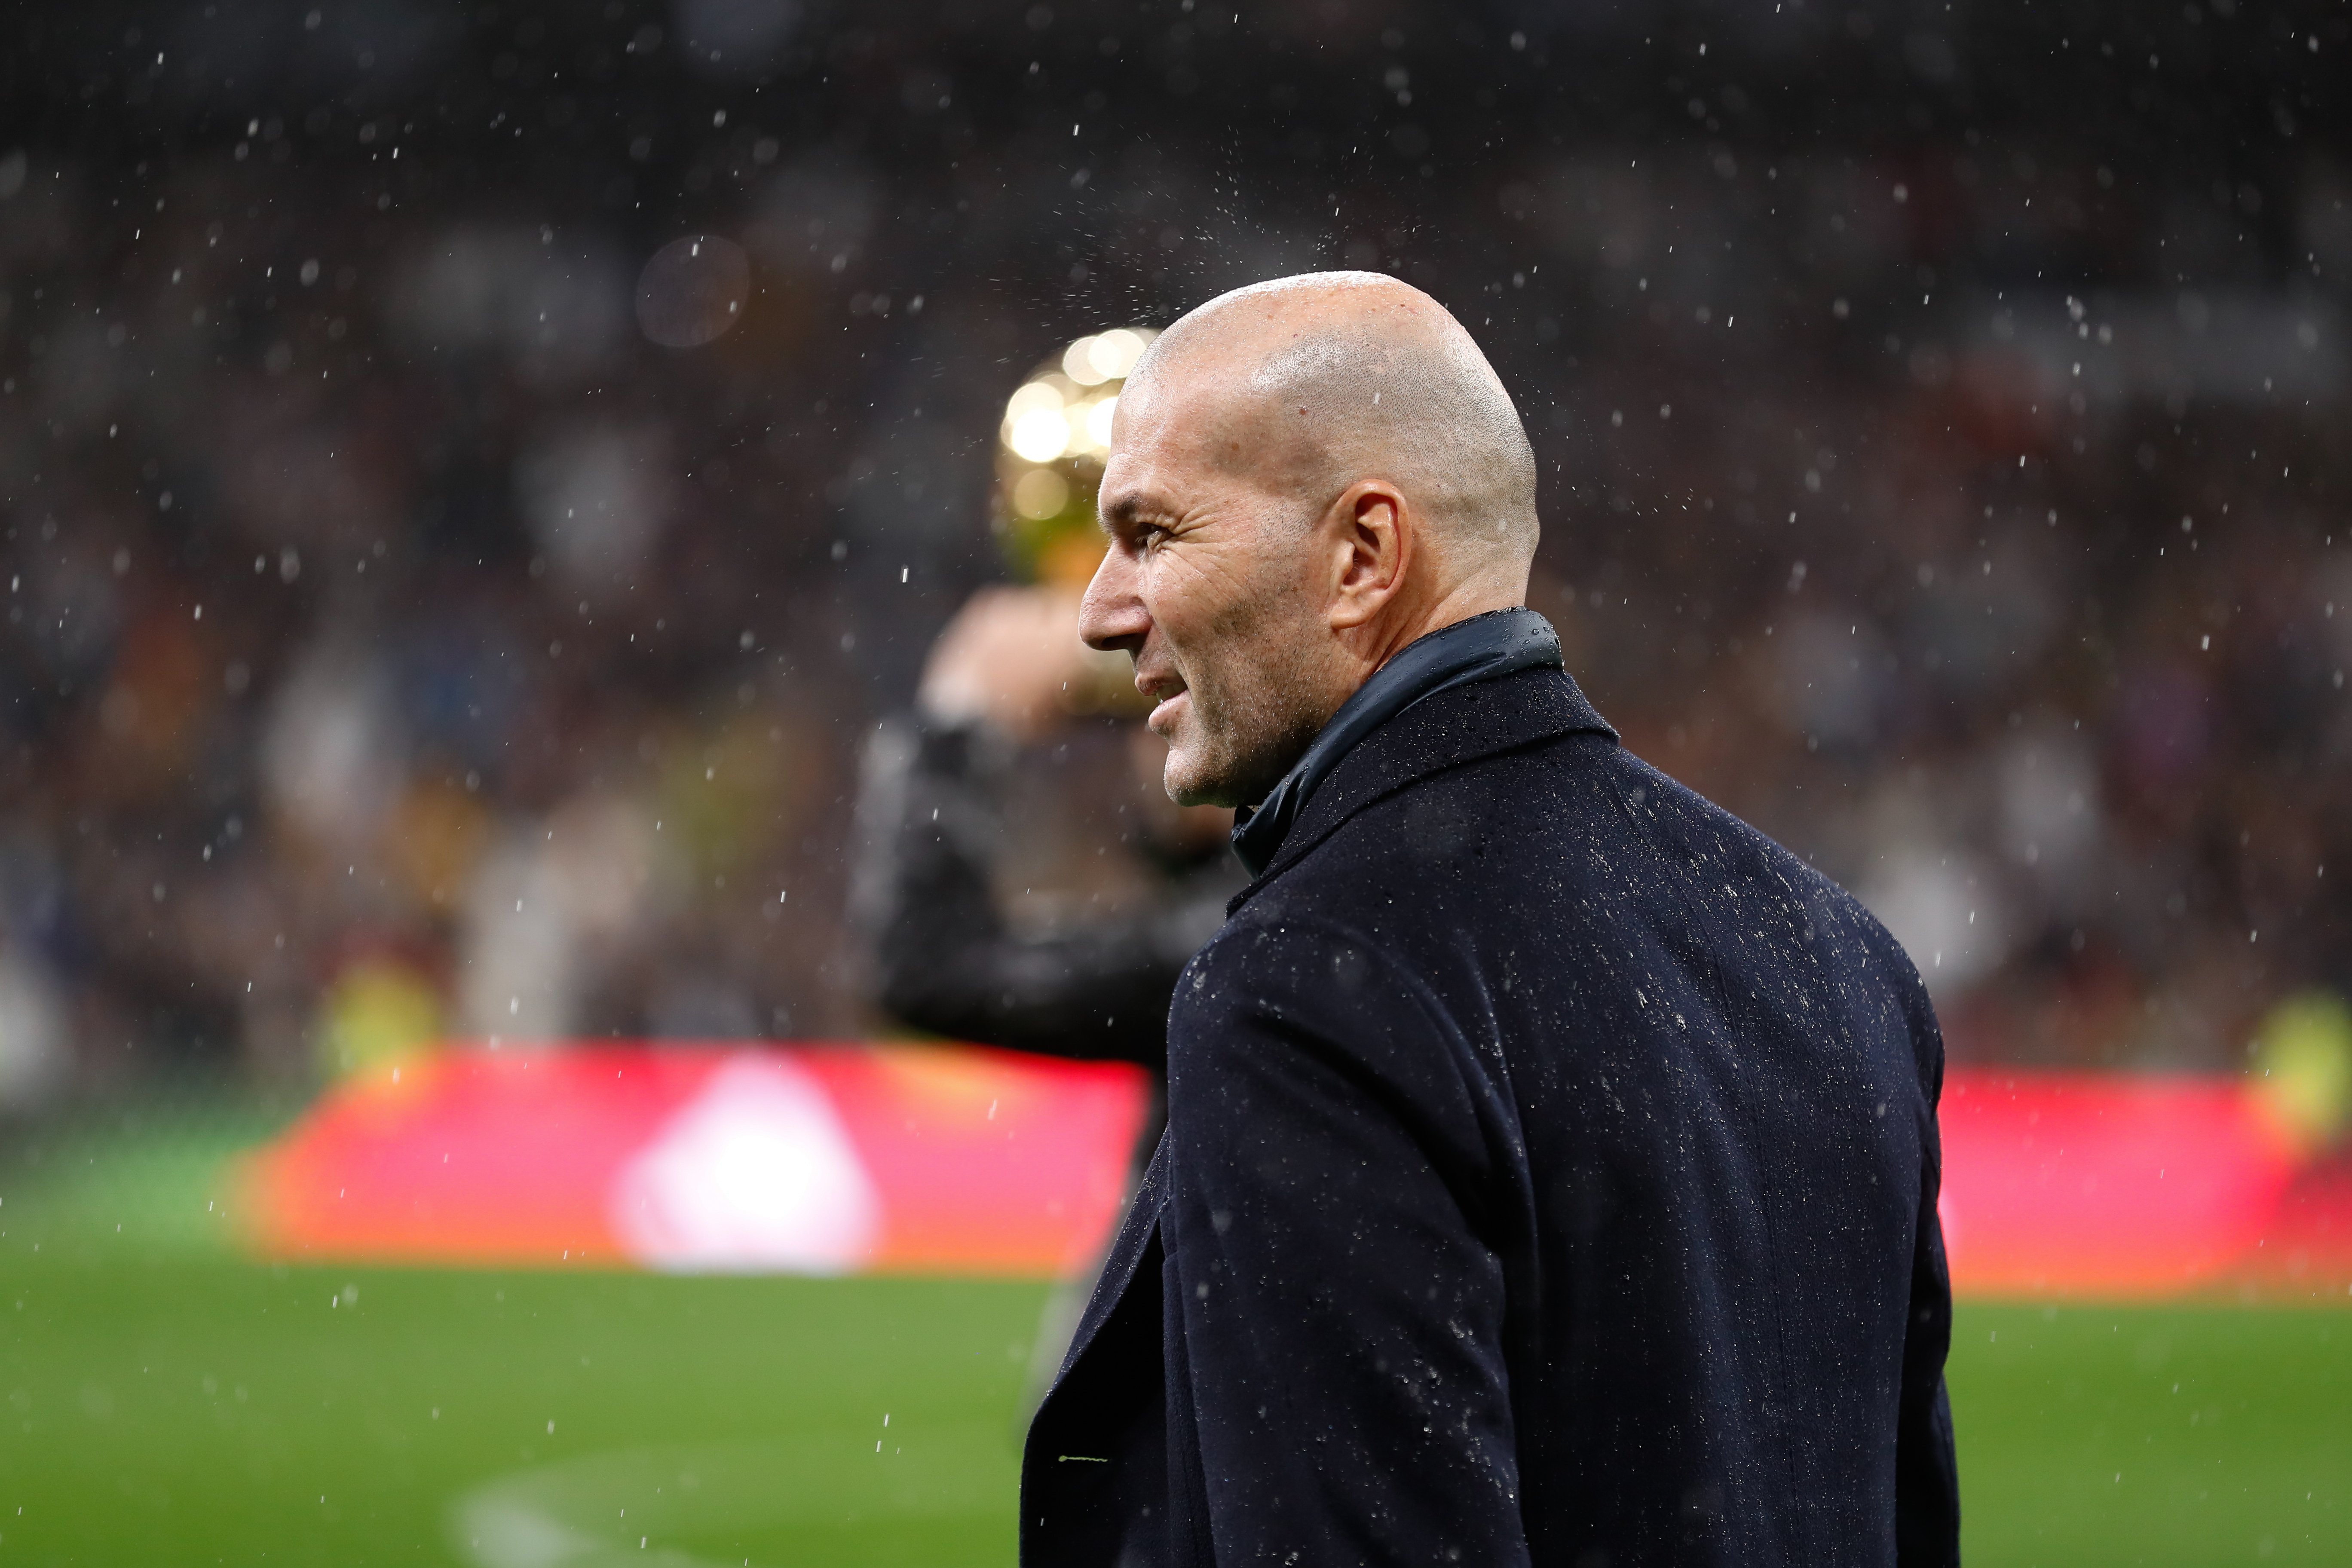 Zidane, darrere de la gran traïció al Barça que tanca Luis Enrique